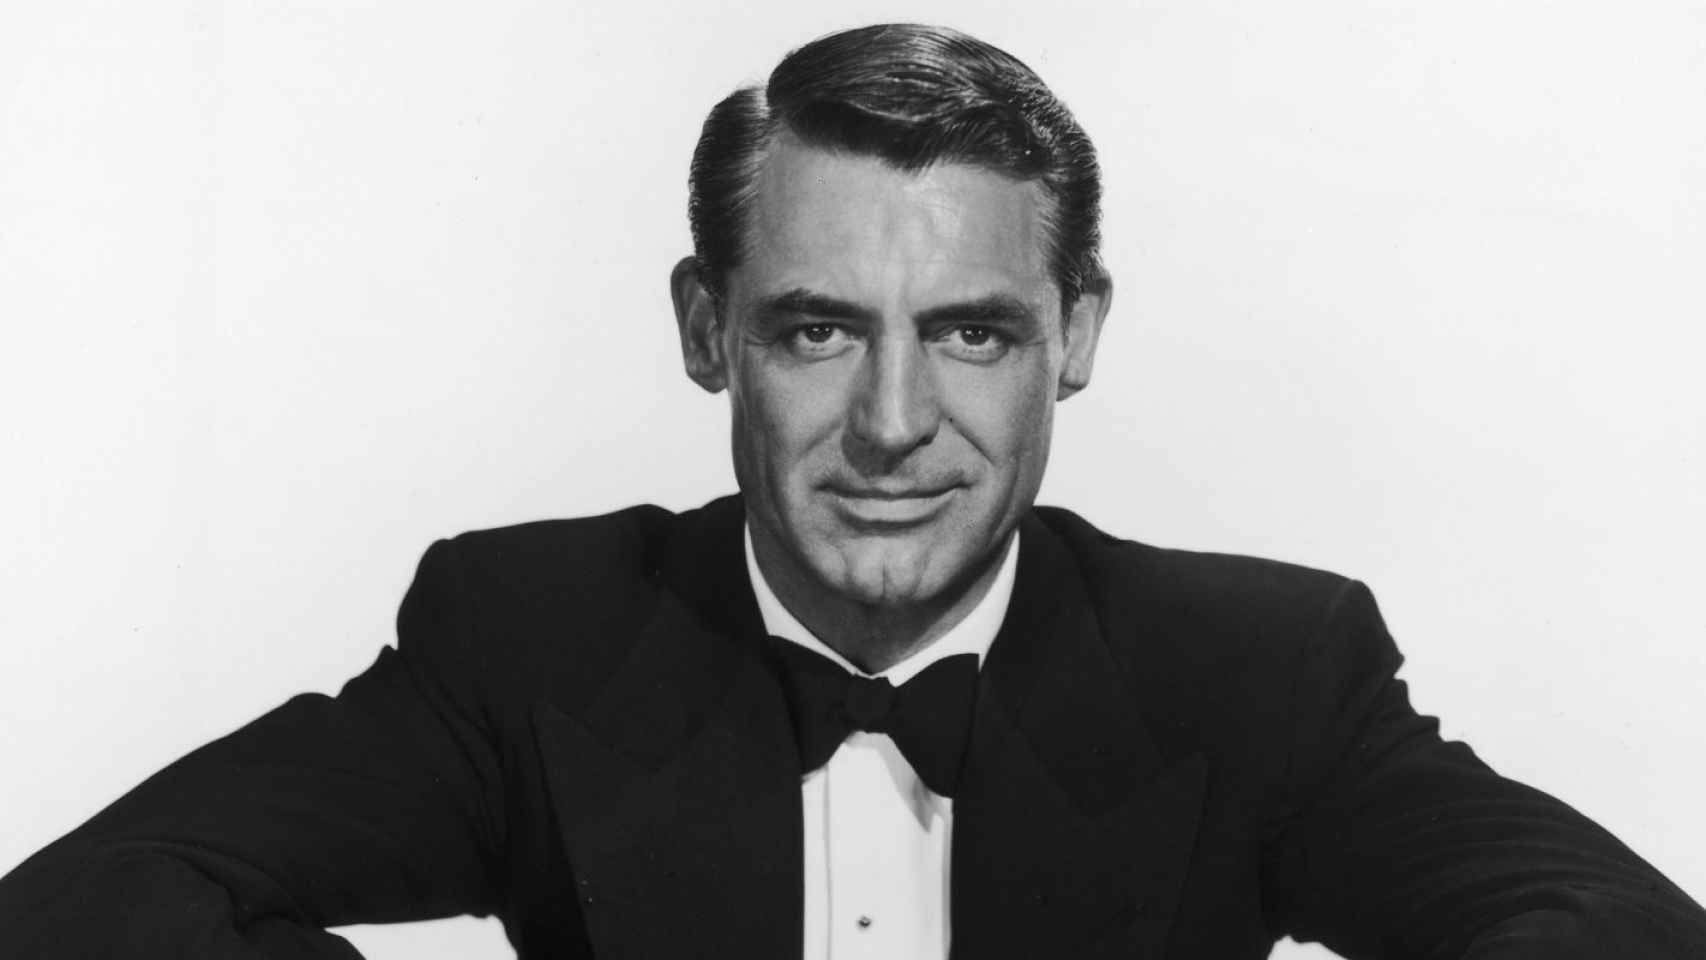 El gran amor de Cary Grant fue Randolph Scott